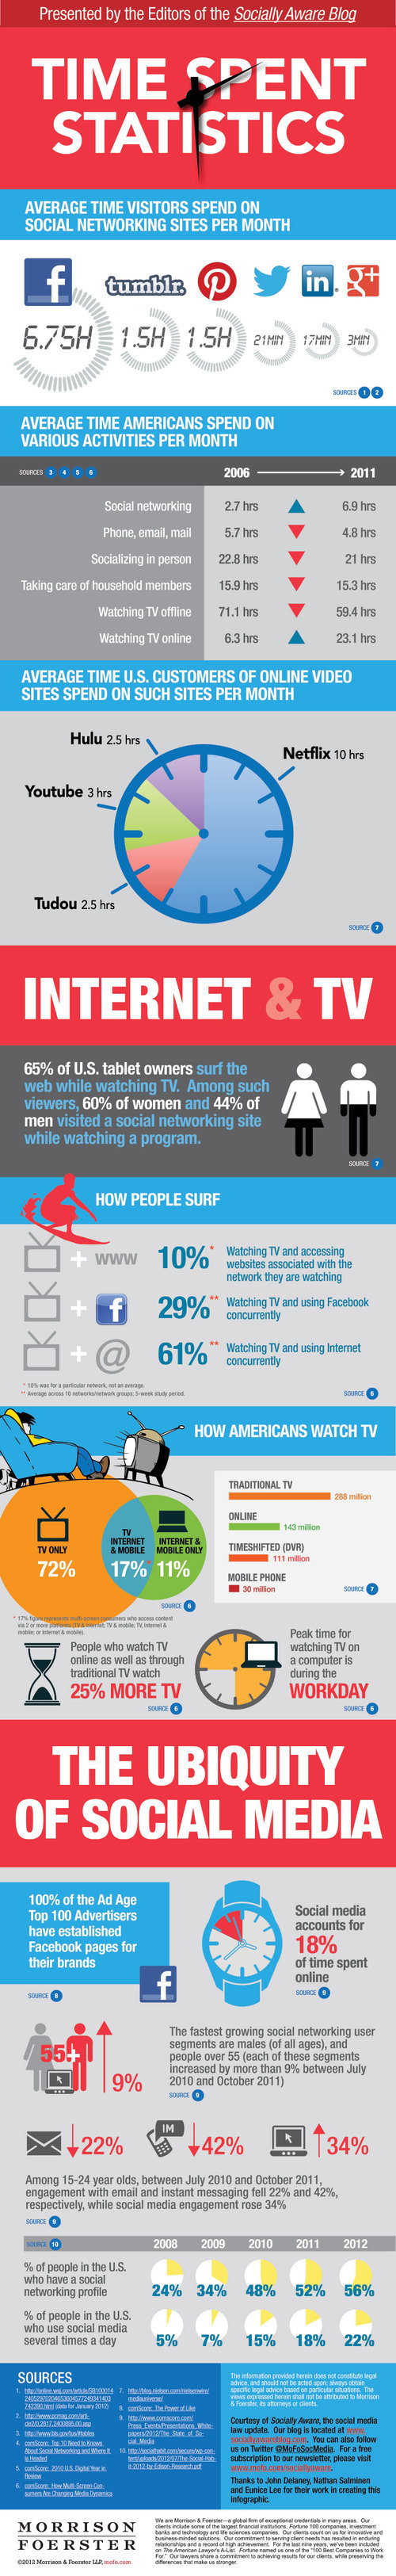 The-Growing-Impact-of-Social-Media.jpg